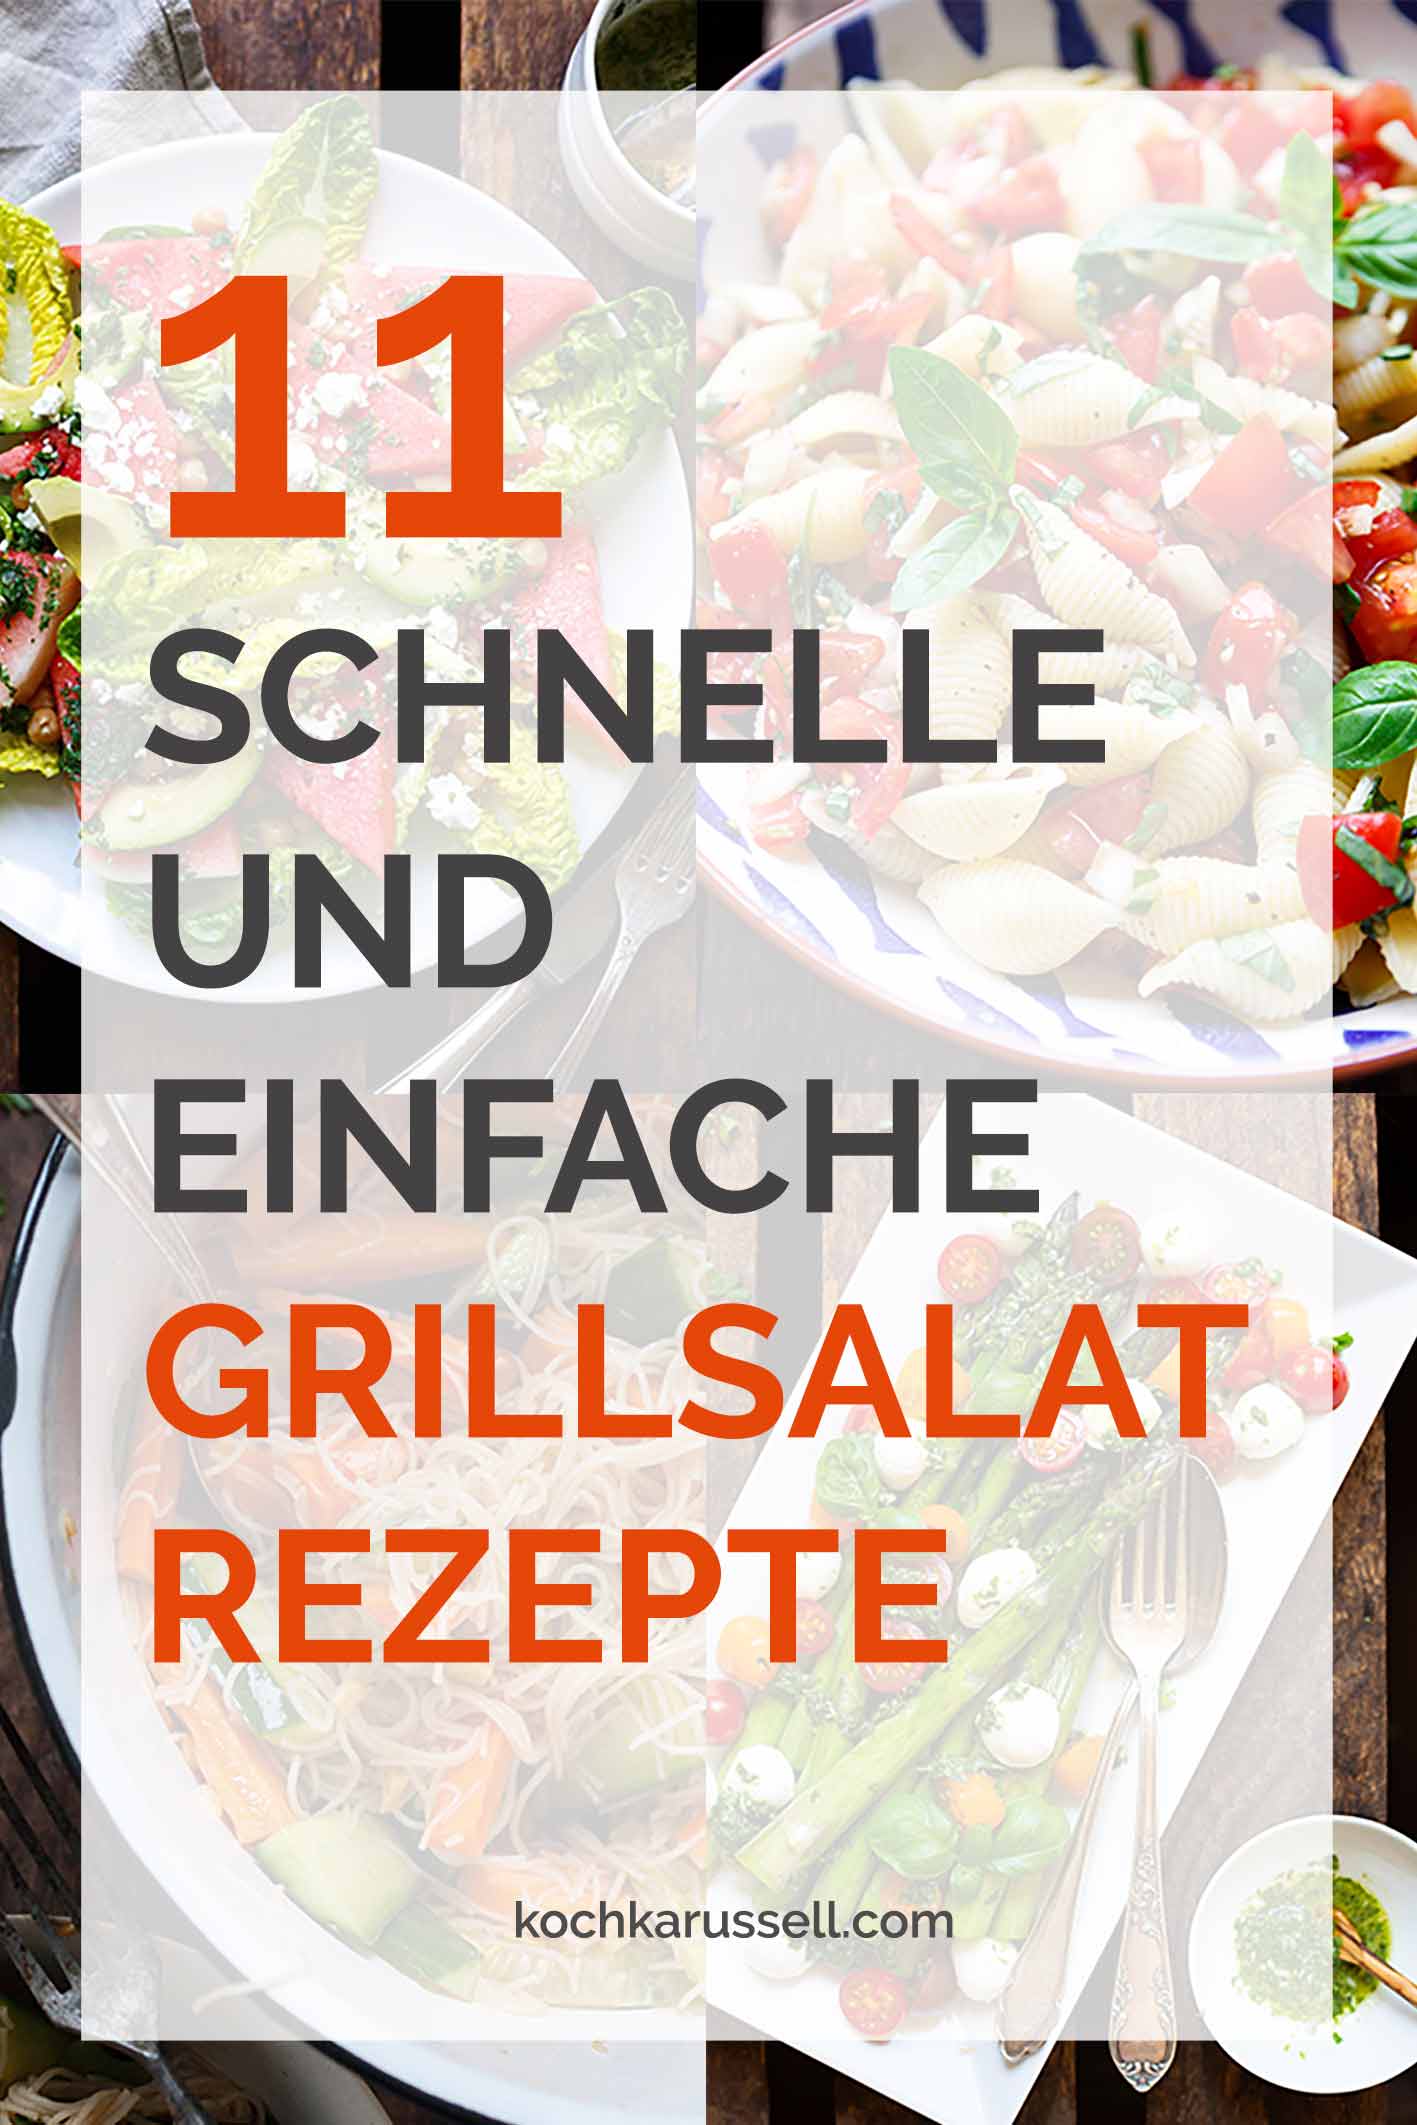 11 schnelle und einfache Grillsalat-Rezepte. Vegetarisch, vegan, mit Fleisch - hier werdet ihr garantiert fündig. Perfekt für's BBQ. - Kochkarussell.com #grillen #salat #grillsalat #bbq #sommer #rezept